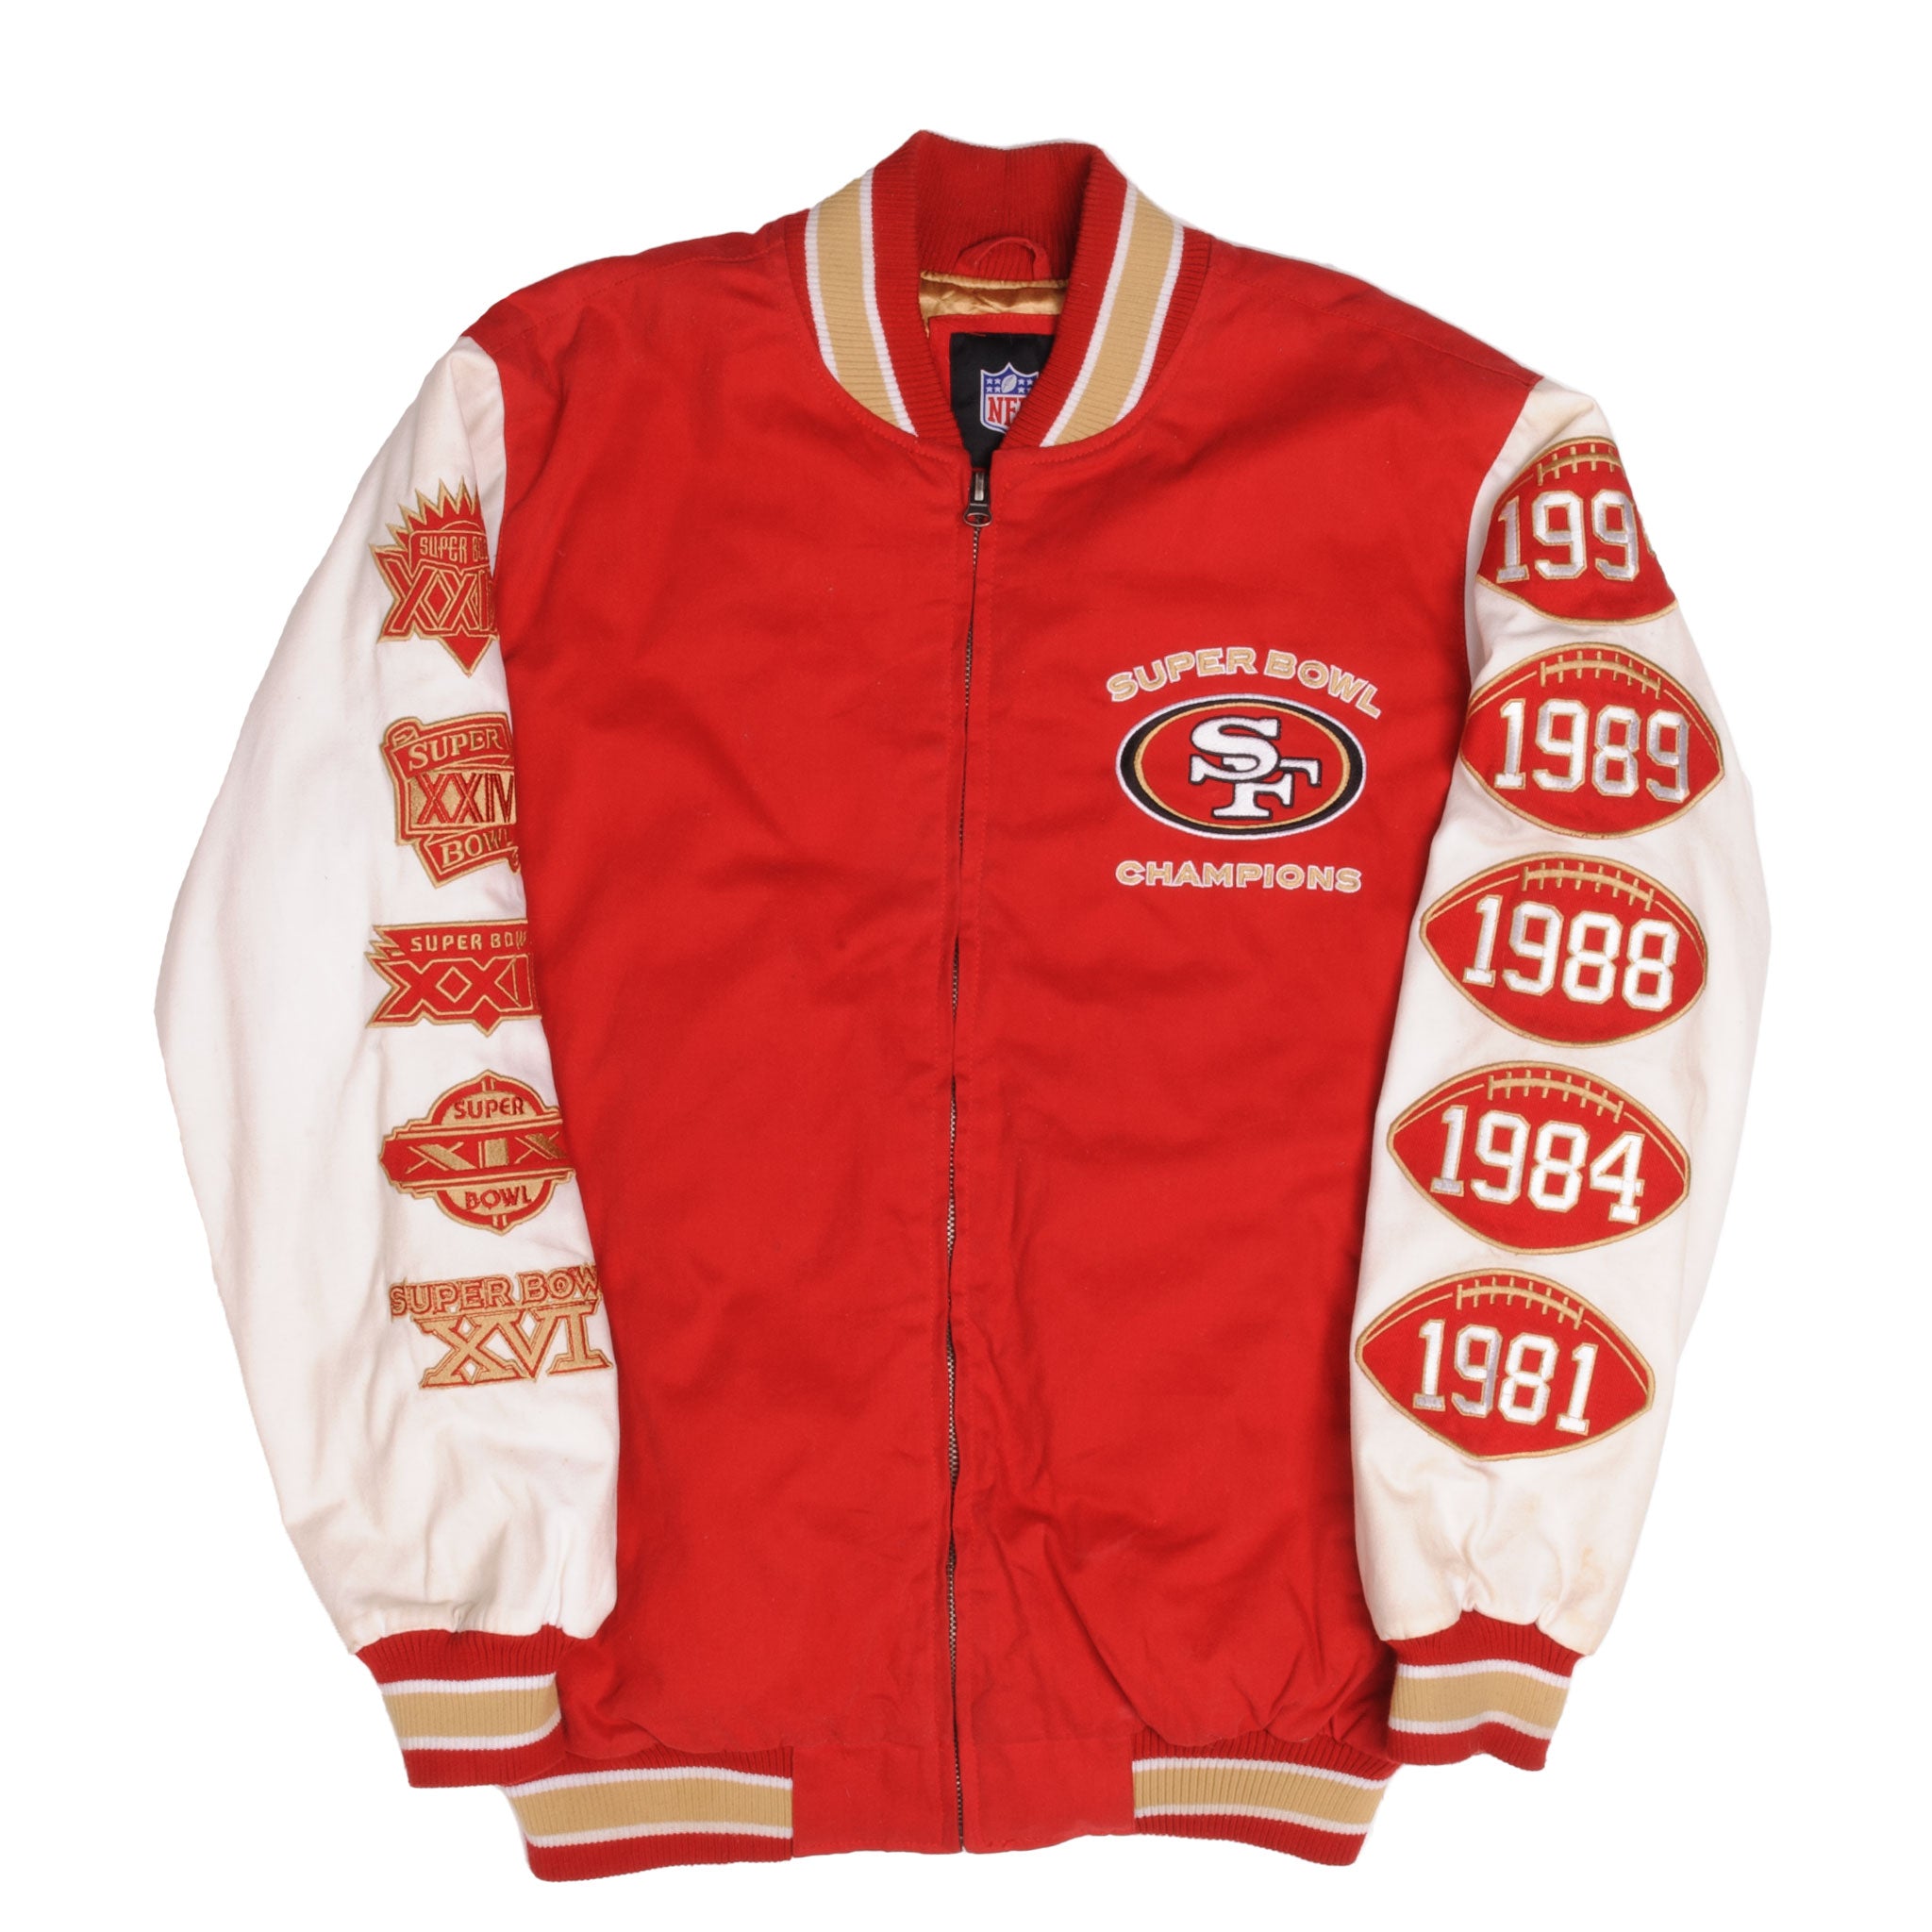 Vintage NFL San Francisco 49ers Super Bowl Champion Jacket 1990s Size Large